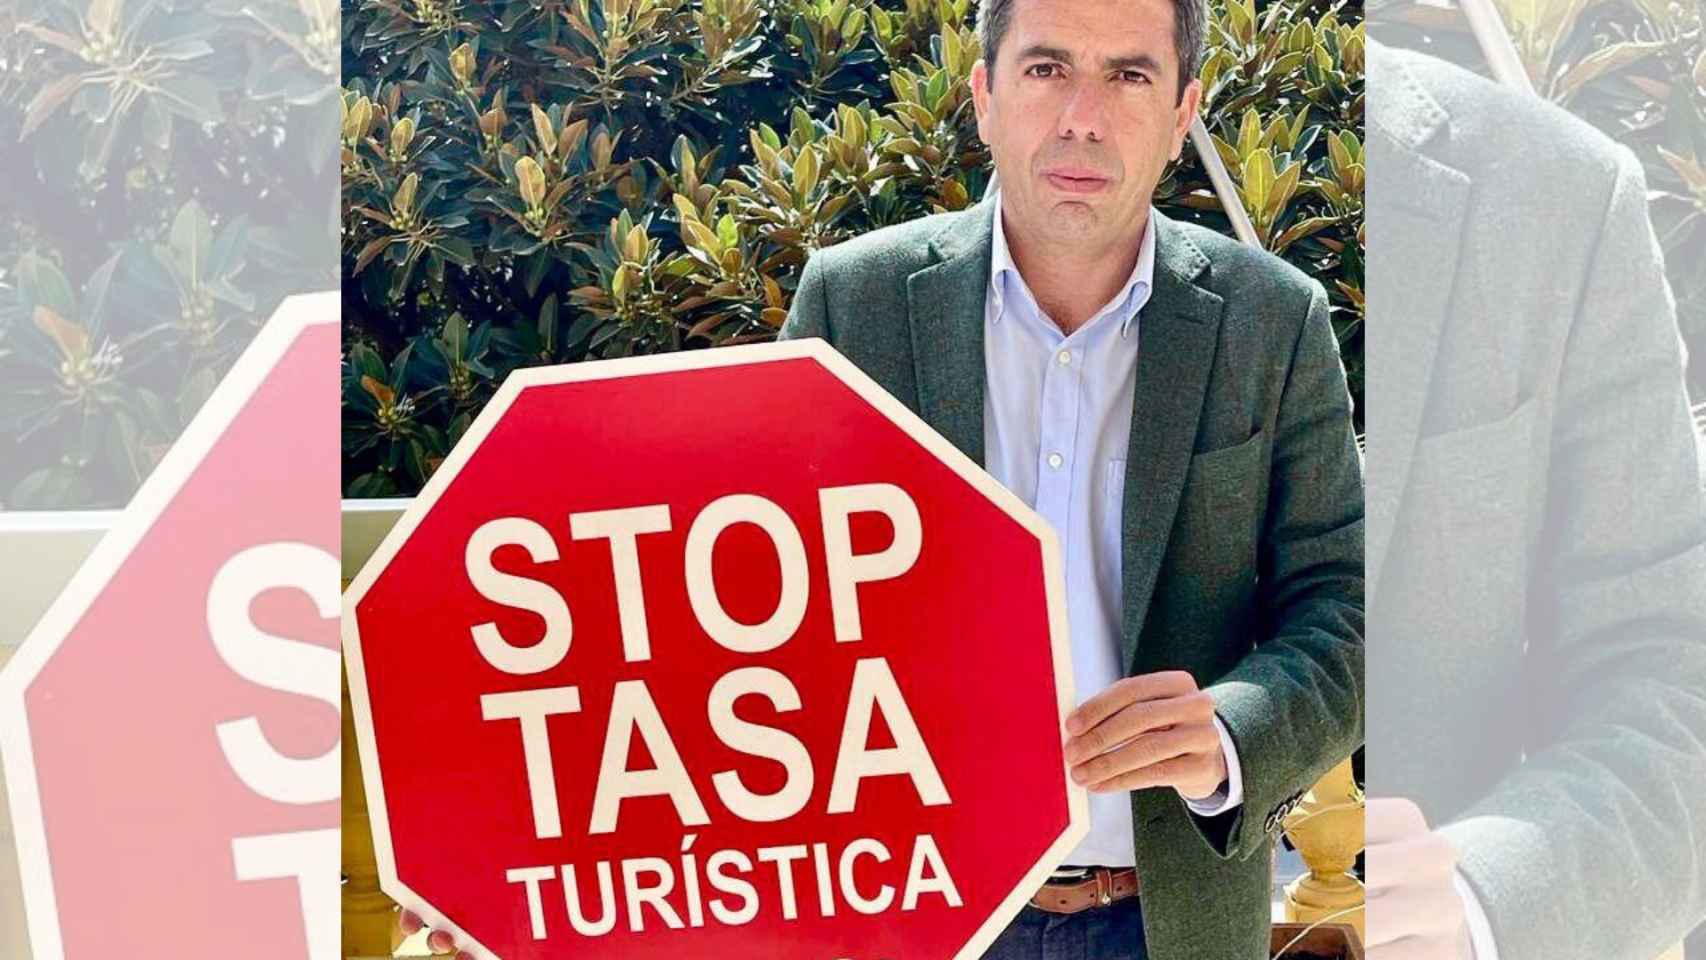 El presidente del PPCV lanza una campaña de 'Stop a la tasa turística'.